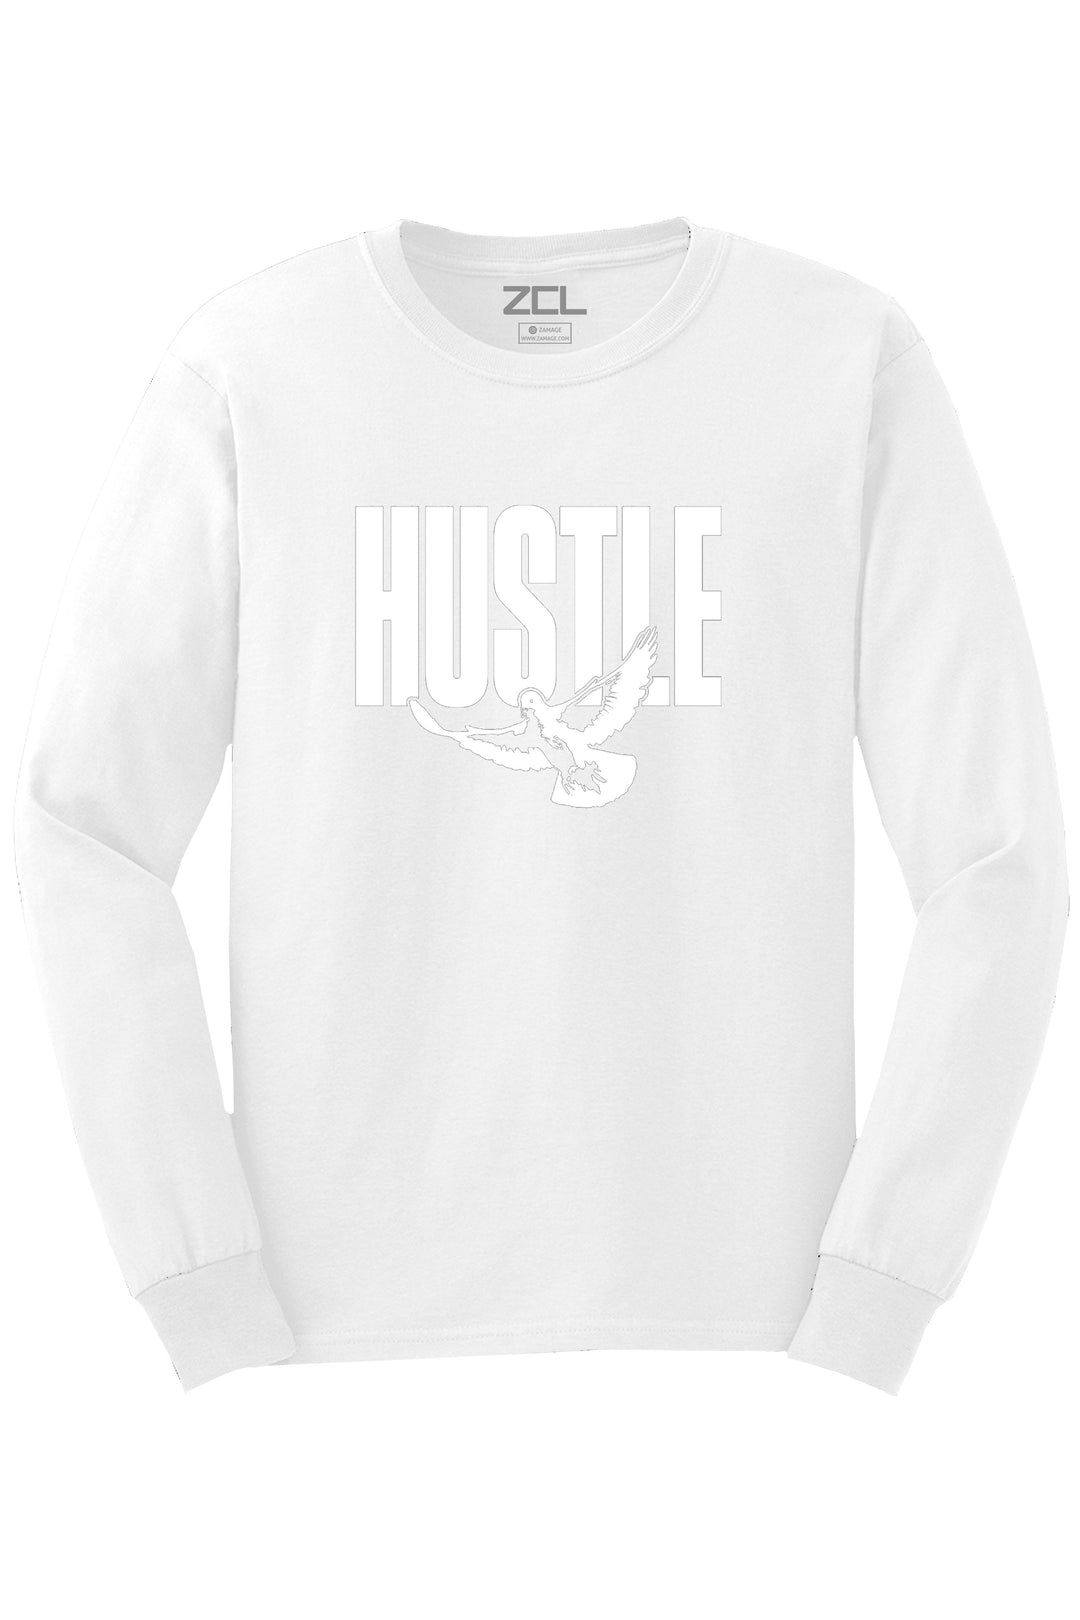 Hustle Dove Long Sleeve Tee (White Logo) - Zamage